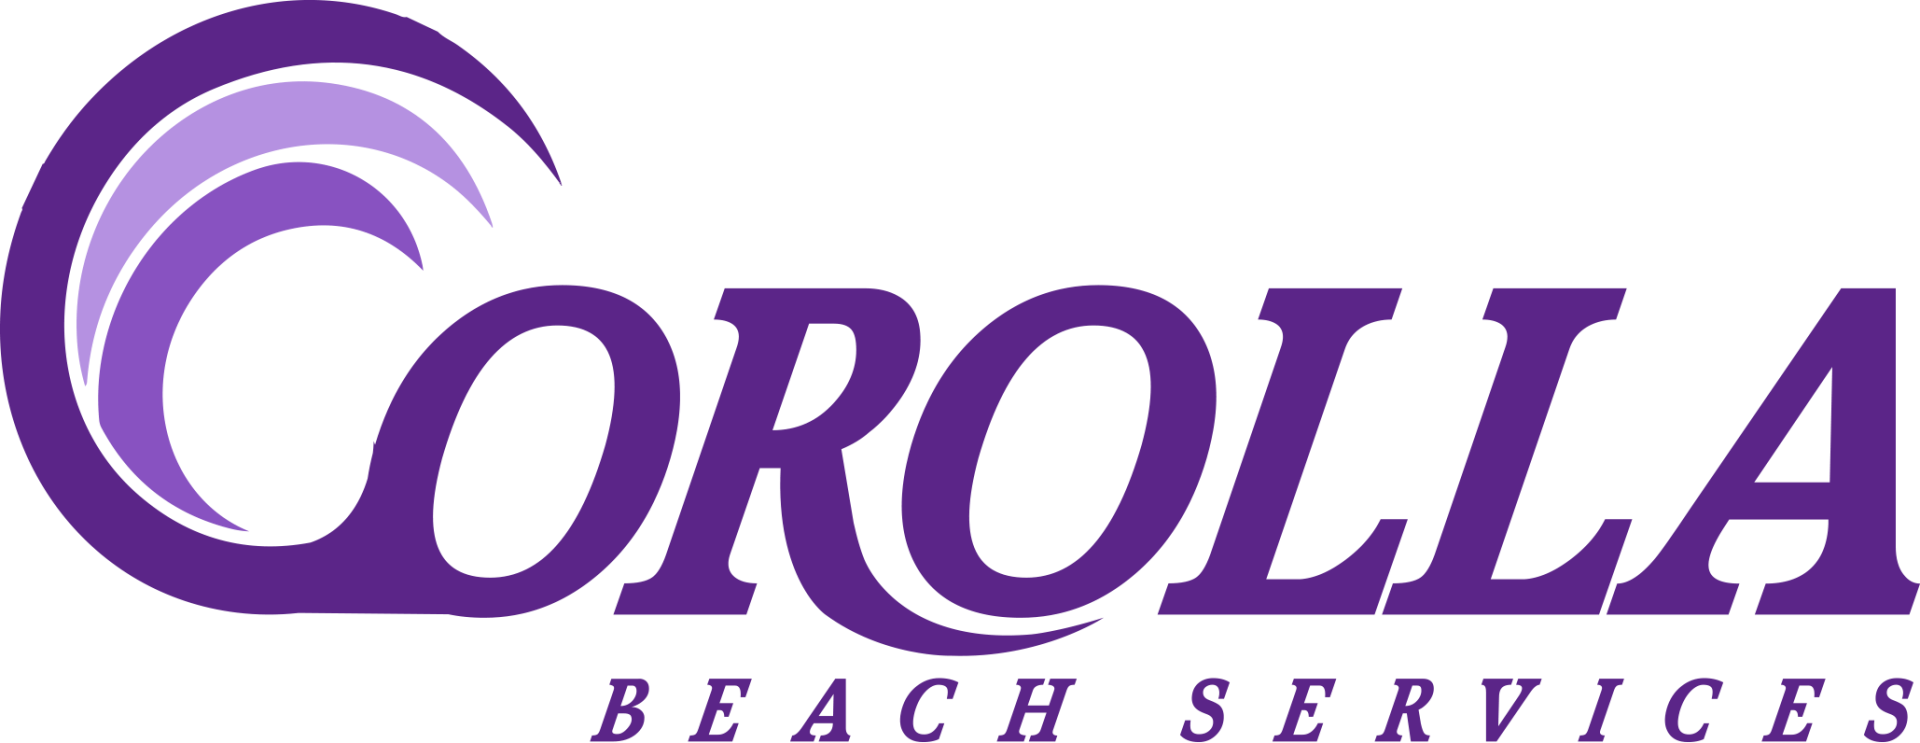 Corolla Beach Services Logo